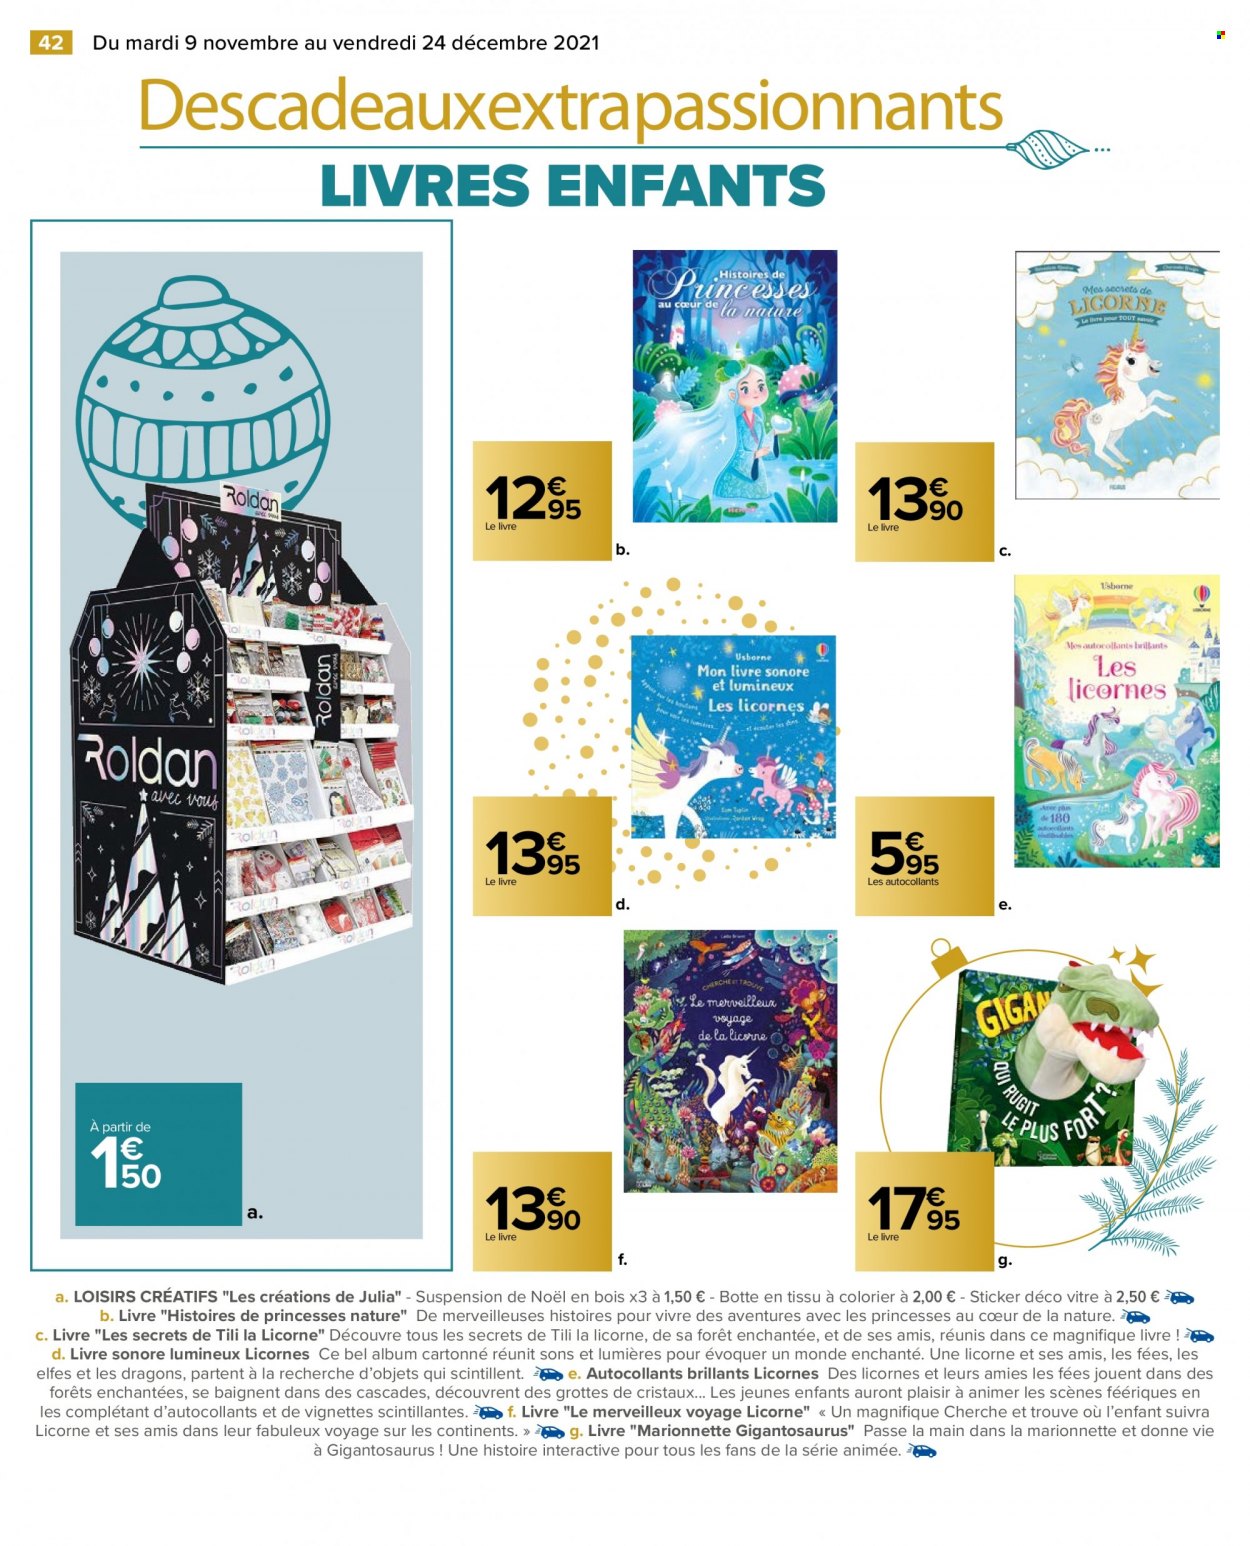 Catalogue Carrefour Hypermarchés - 09.11.2021 - 24.12.2021. 